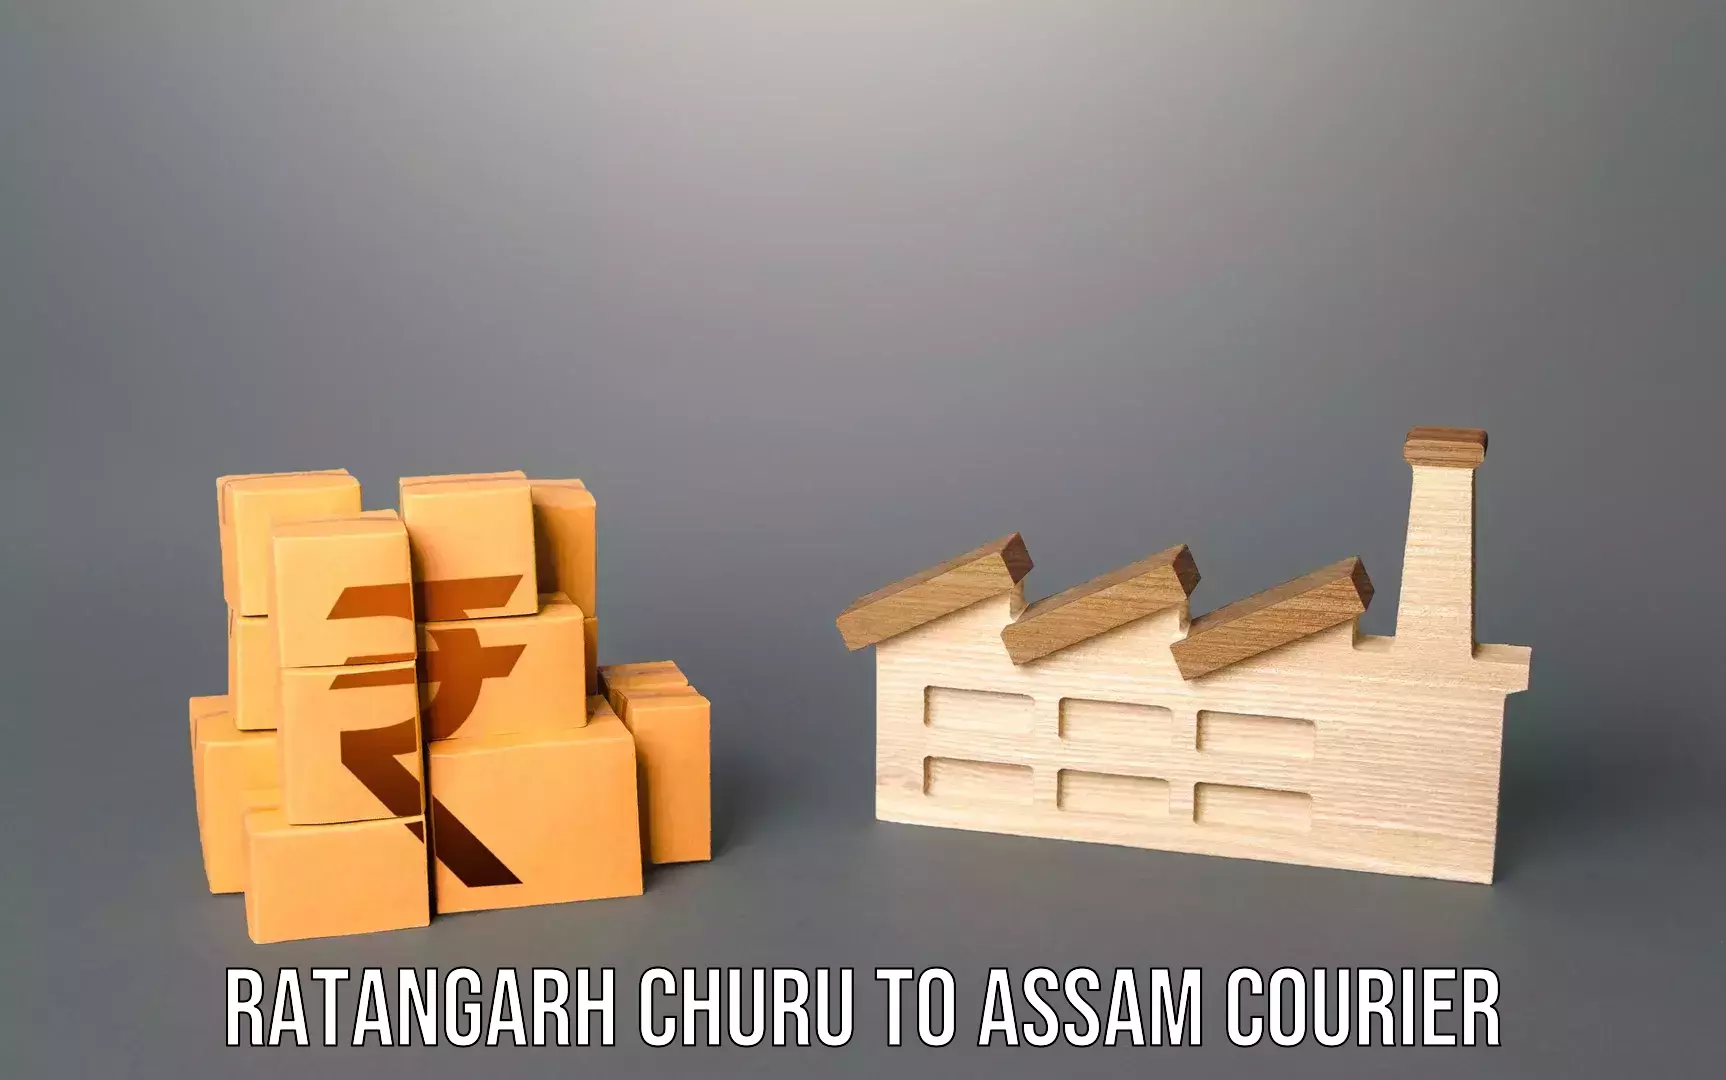 Door-to-door baggage service Ratangarh Churu to Assam